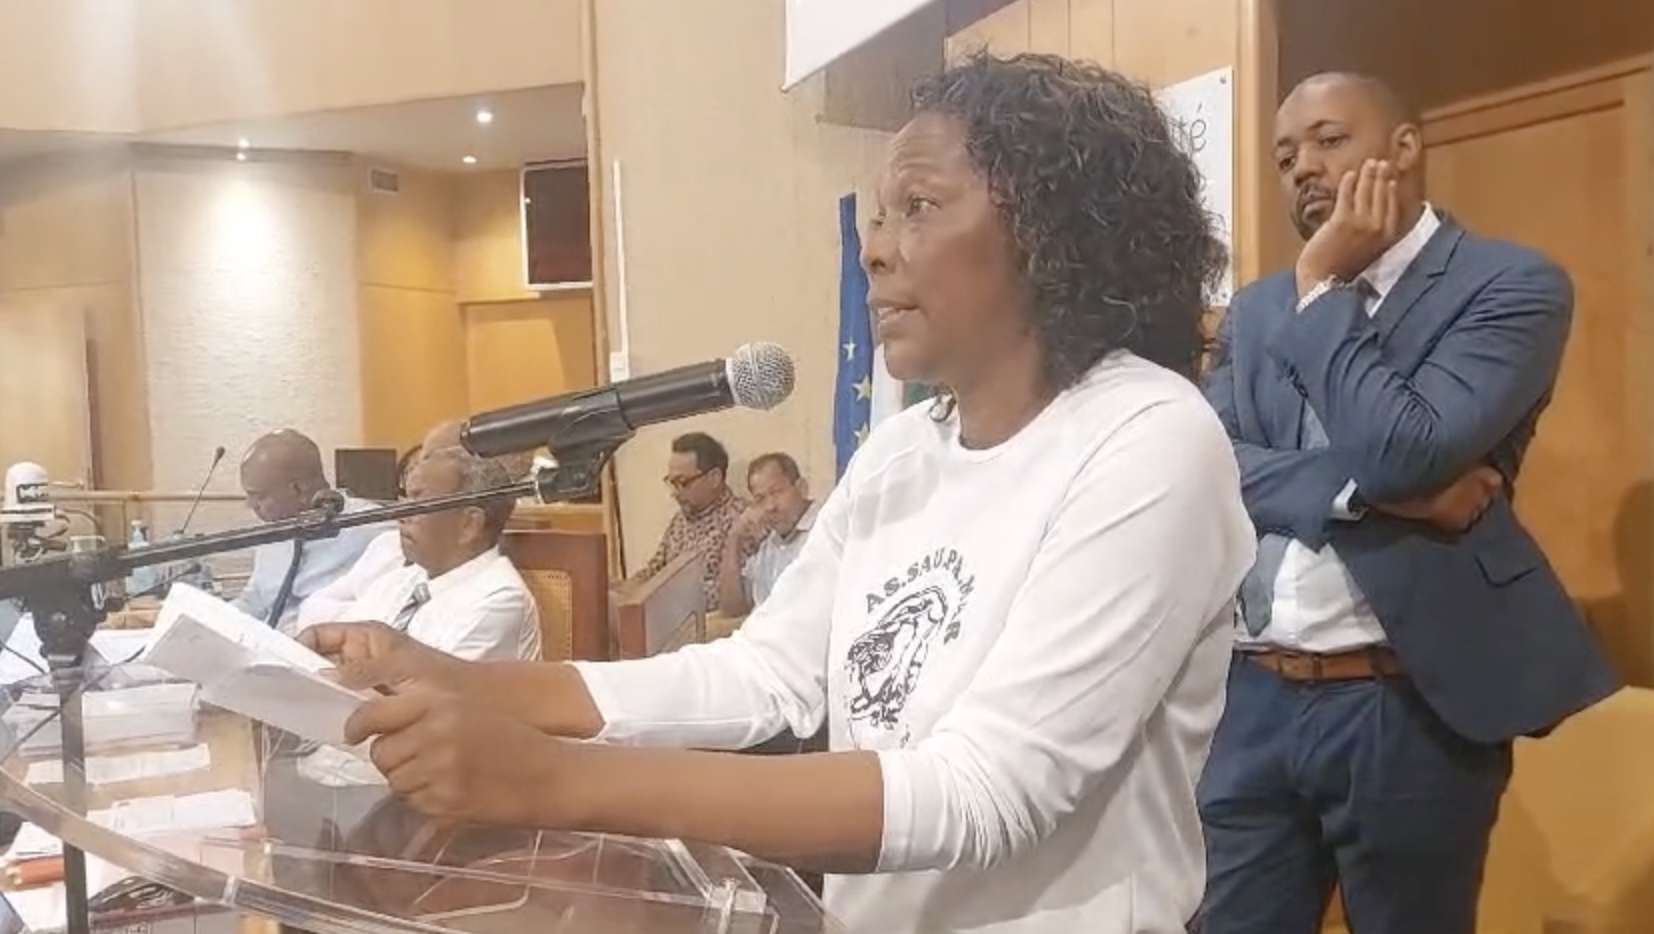     [VIDEO] La question foncière s’invite à la Plénière de la Collectivité Territoriale de la Martinique

